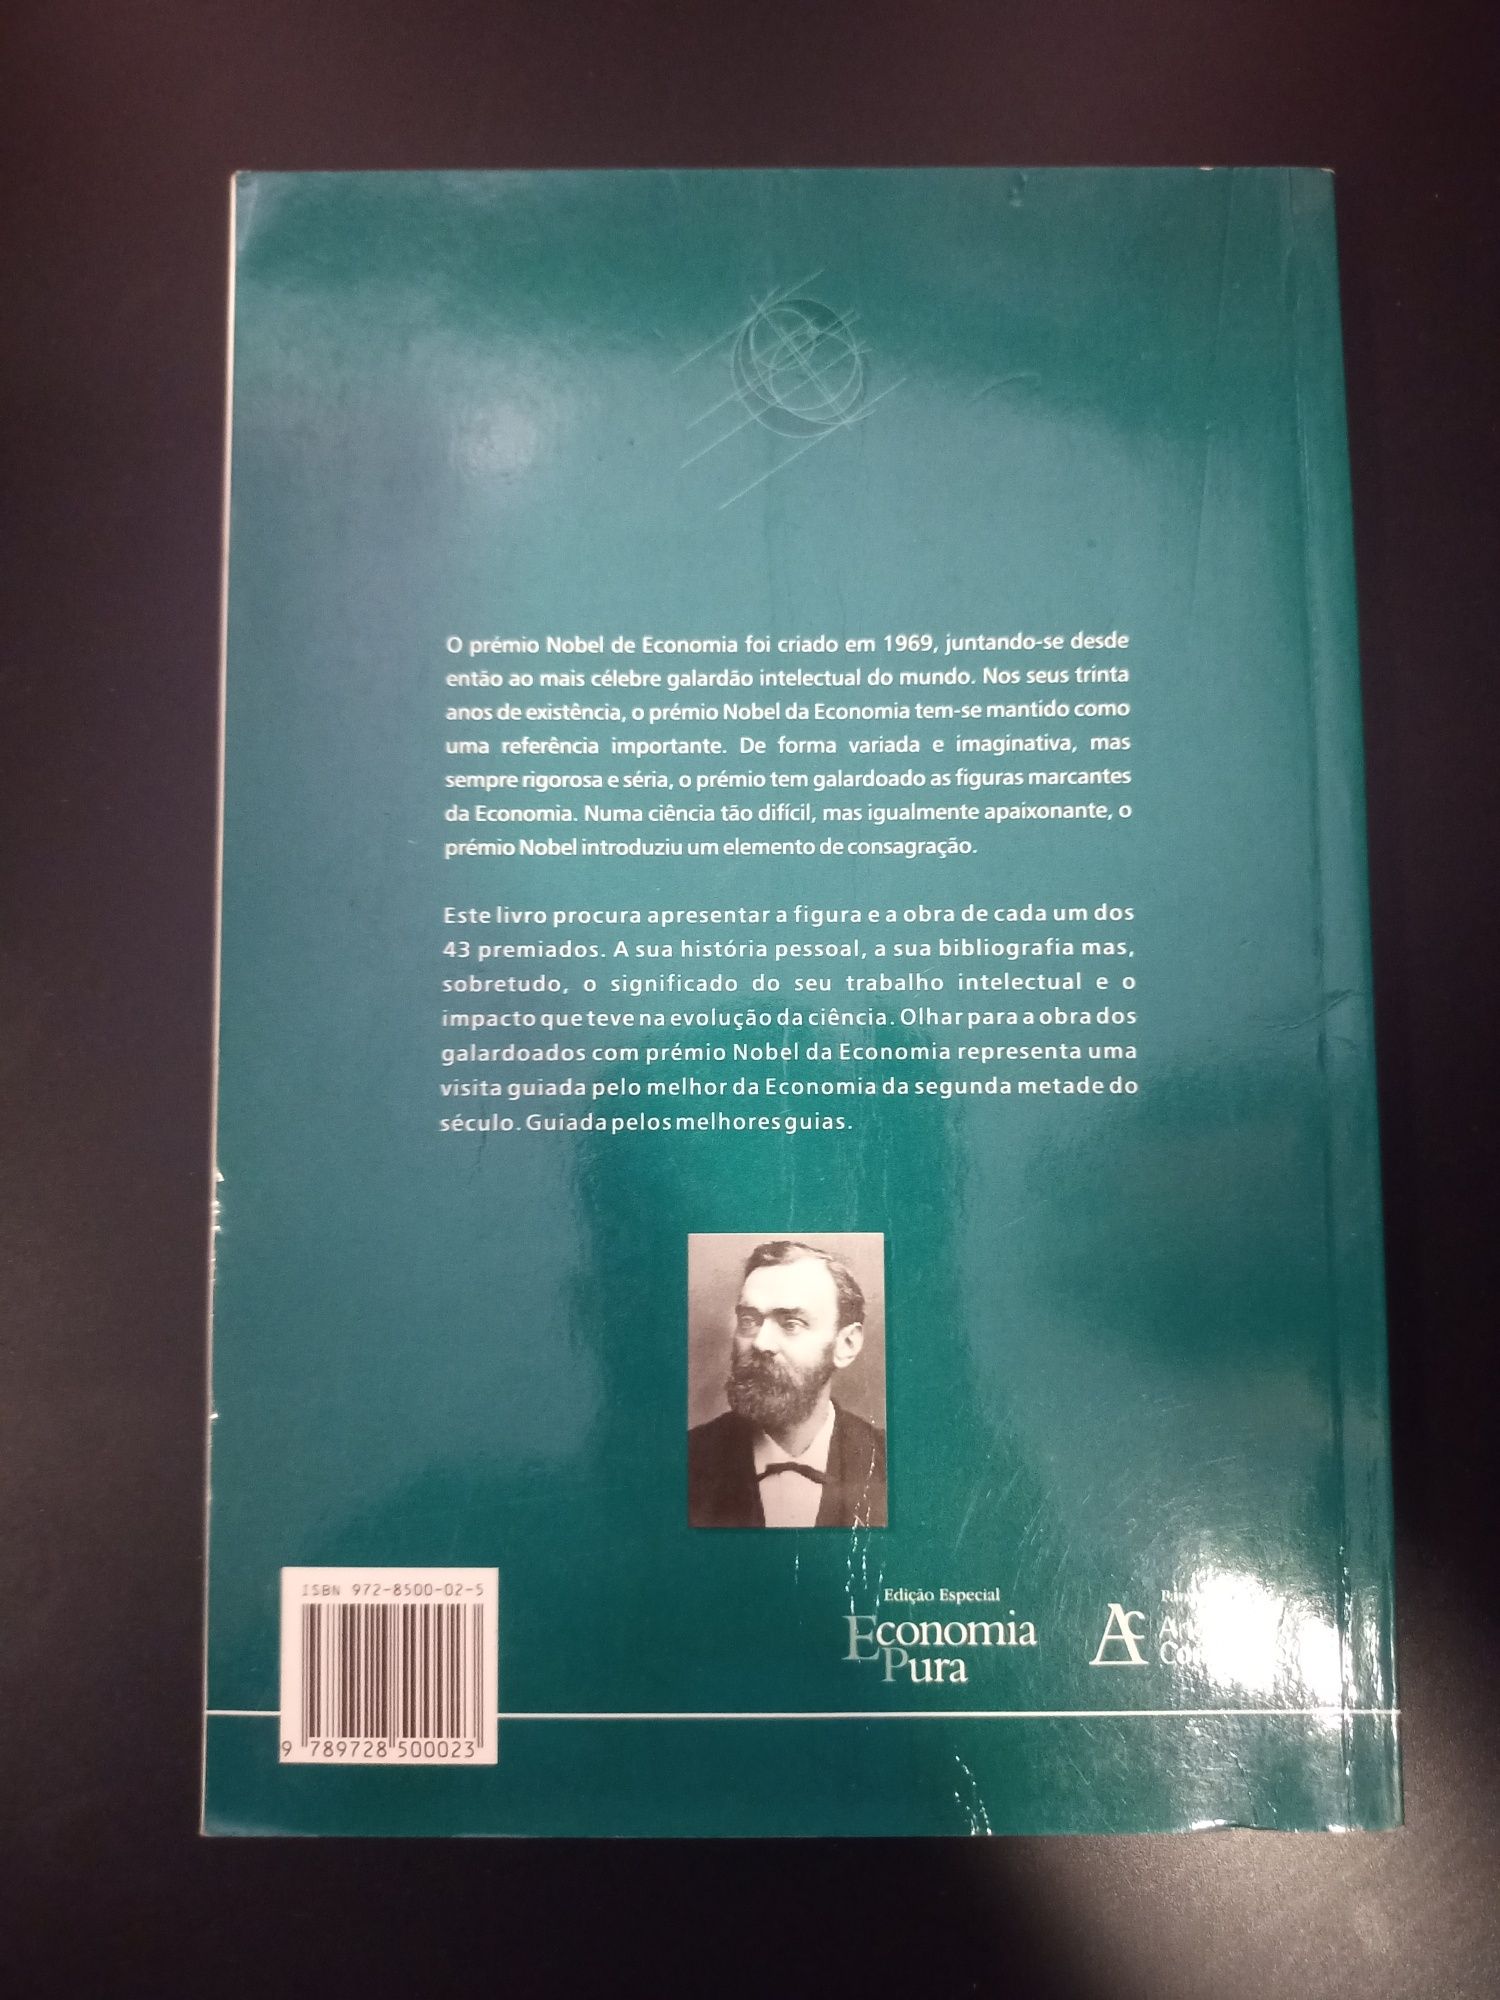 Nobel da Economia de João César das Neves